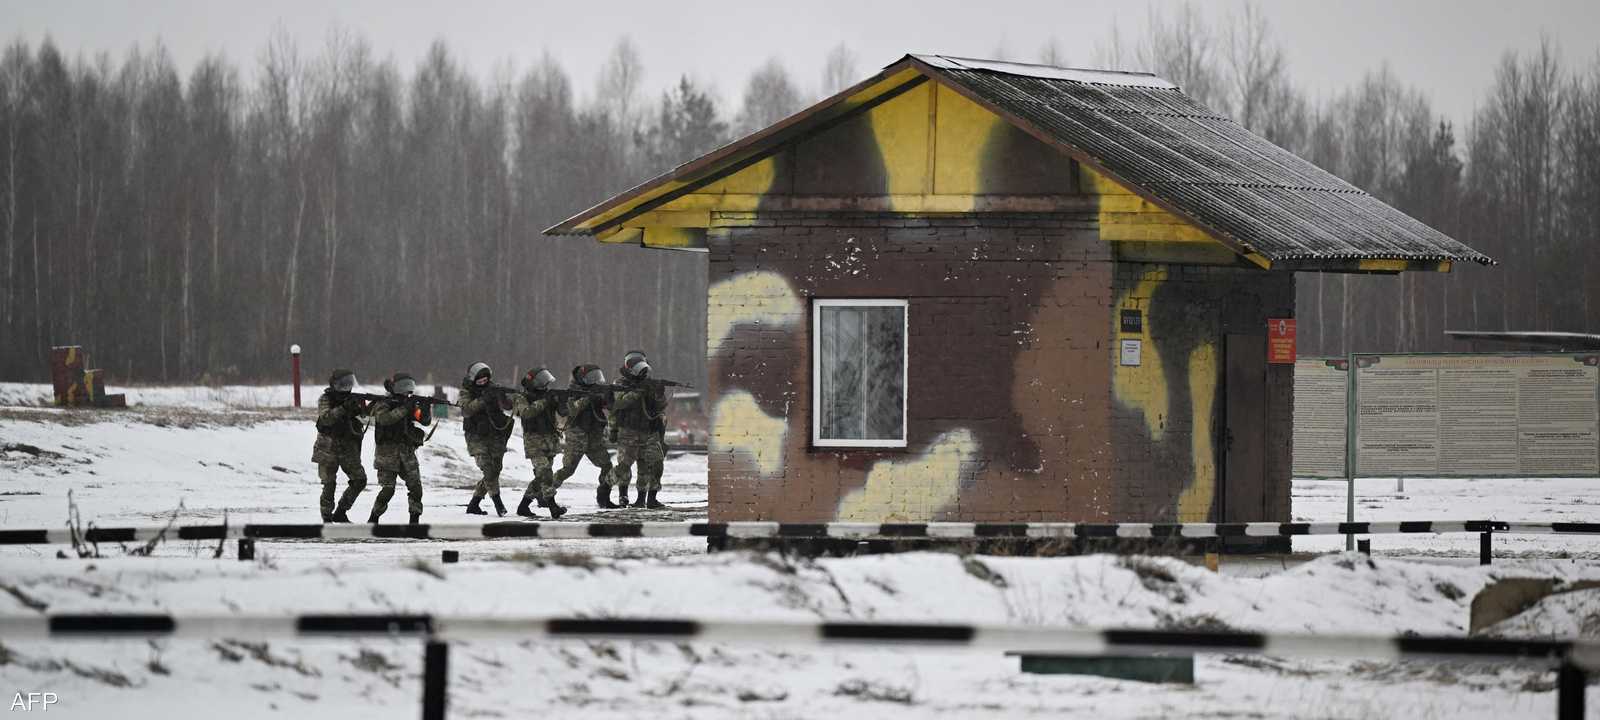 ليتوانيا نفت تنفيذ أي تحرك عسكري ضد بيلاروسيا